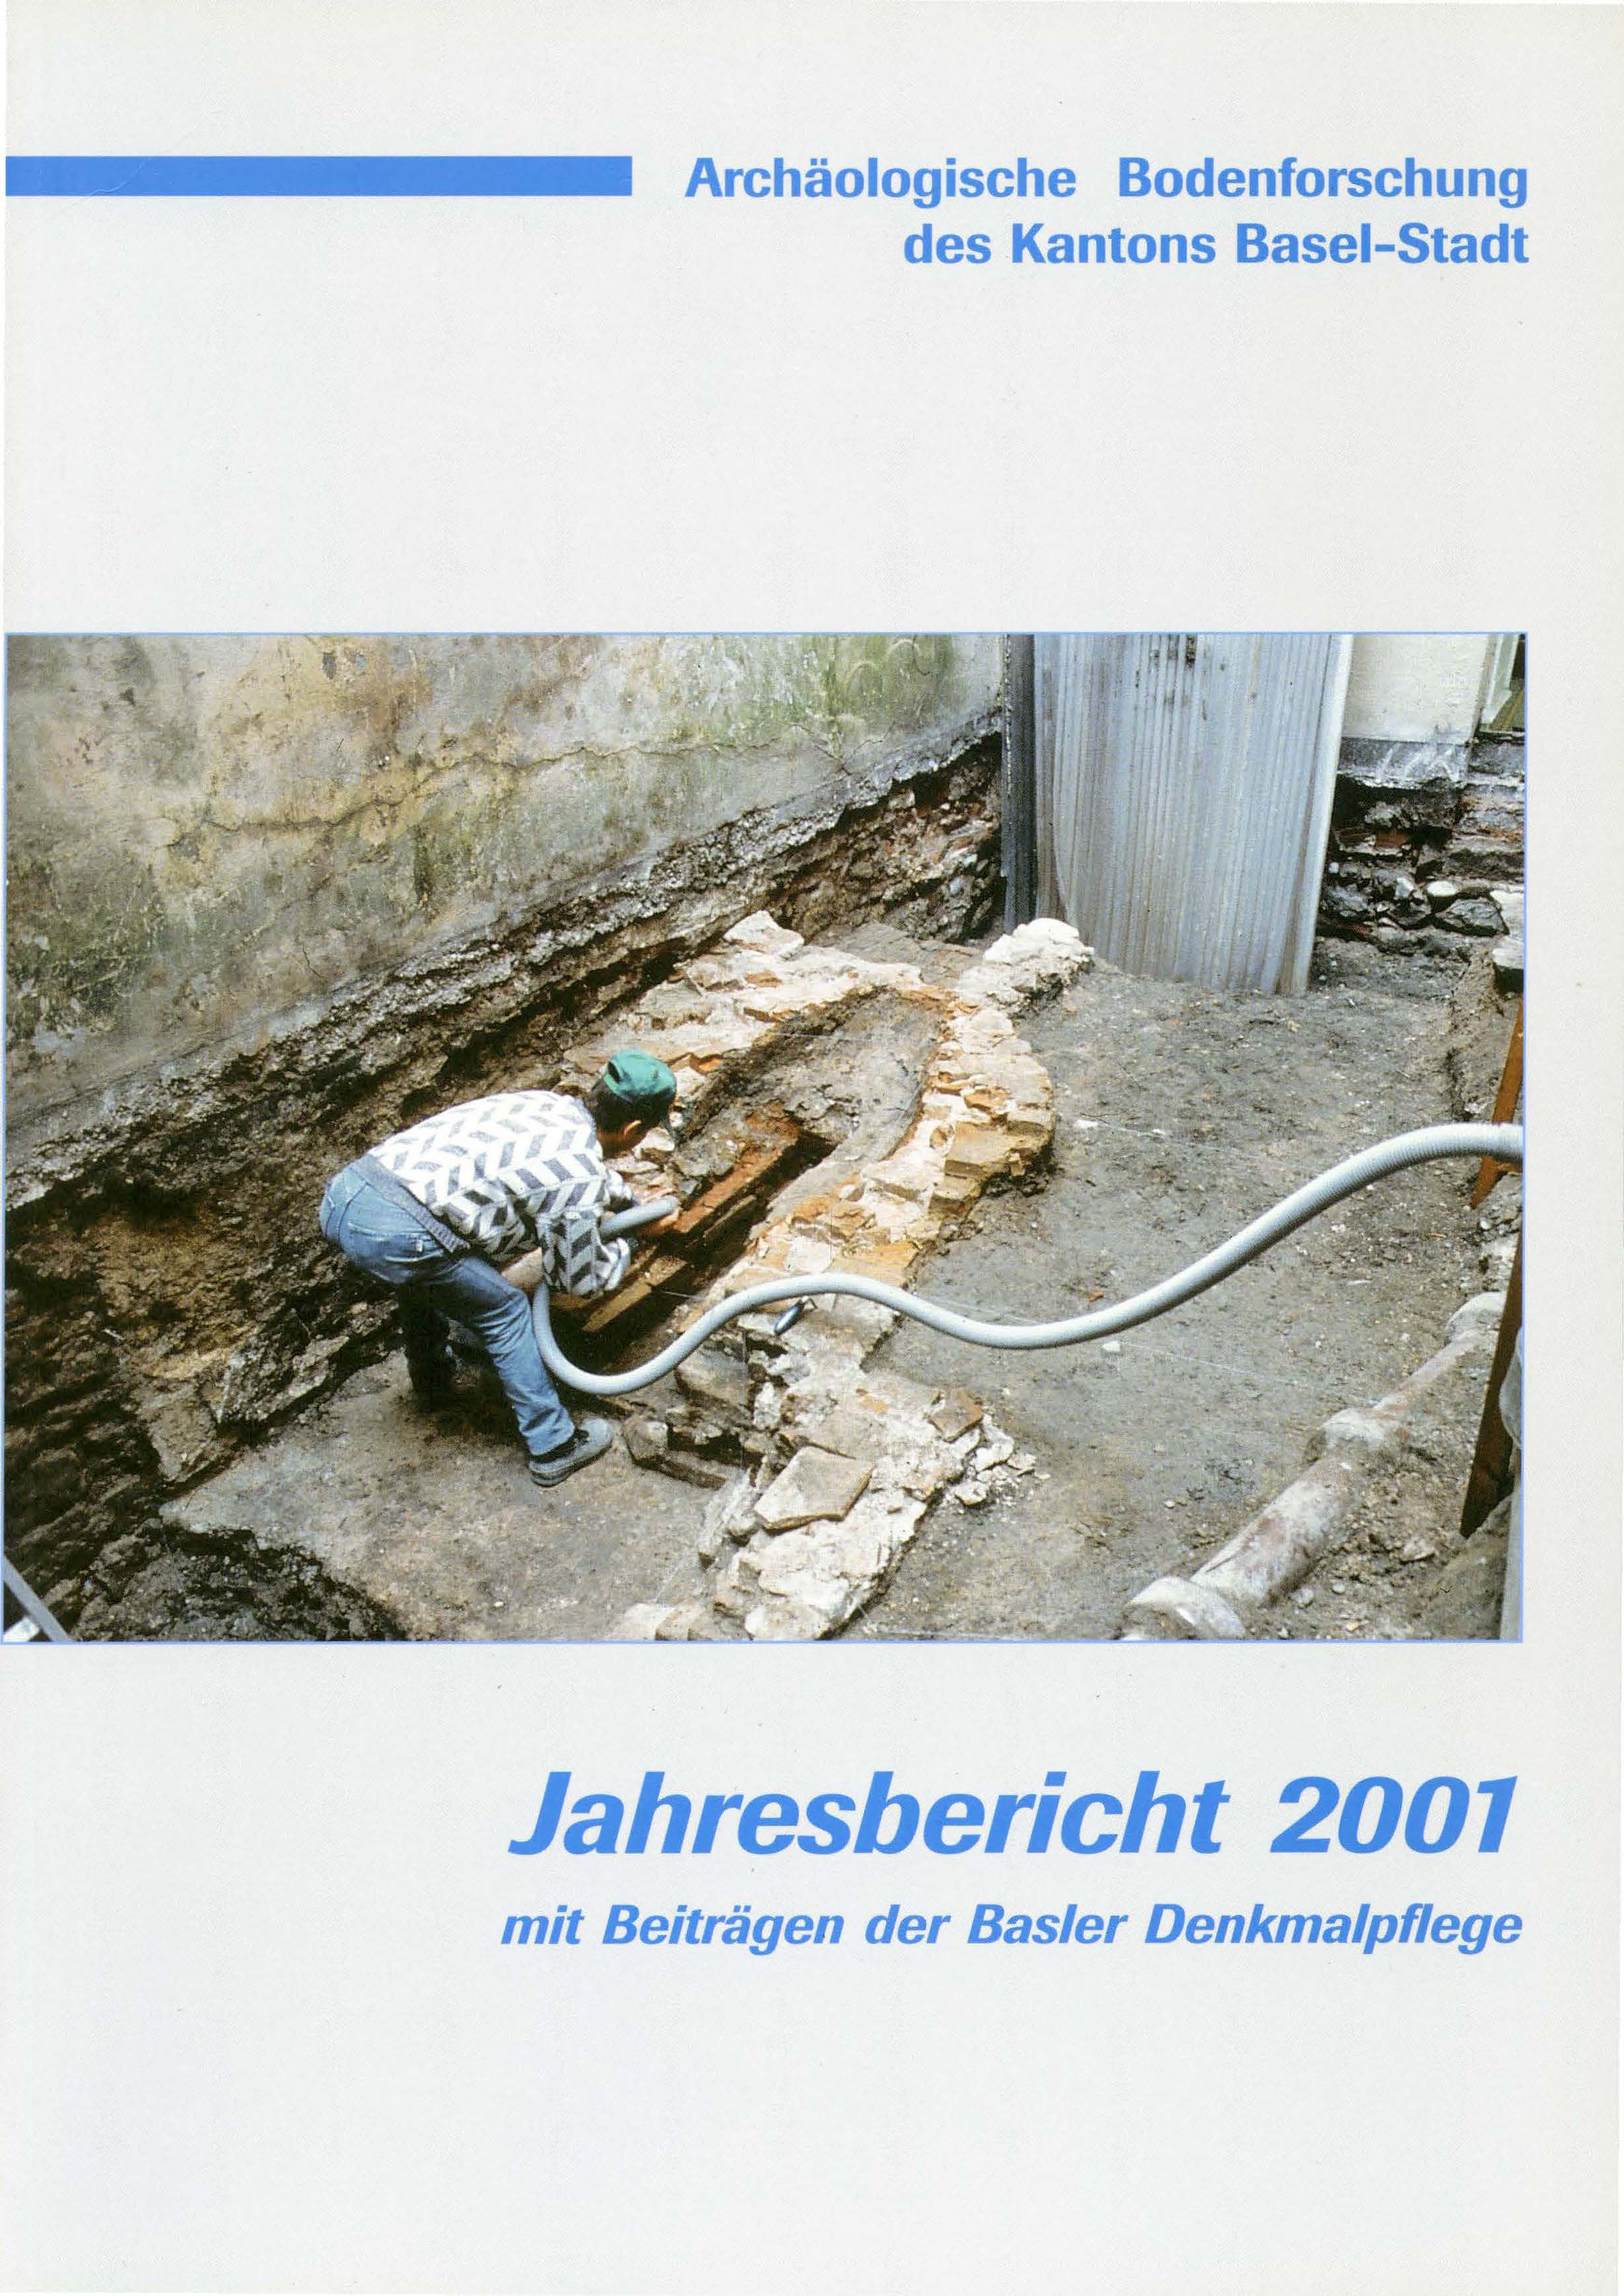 Vorderseite des Jahresberichts 2001